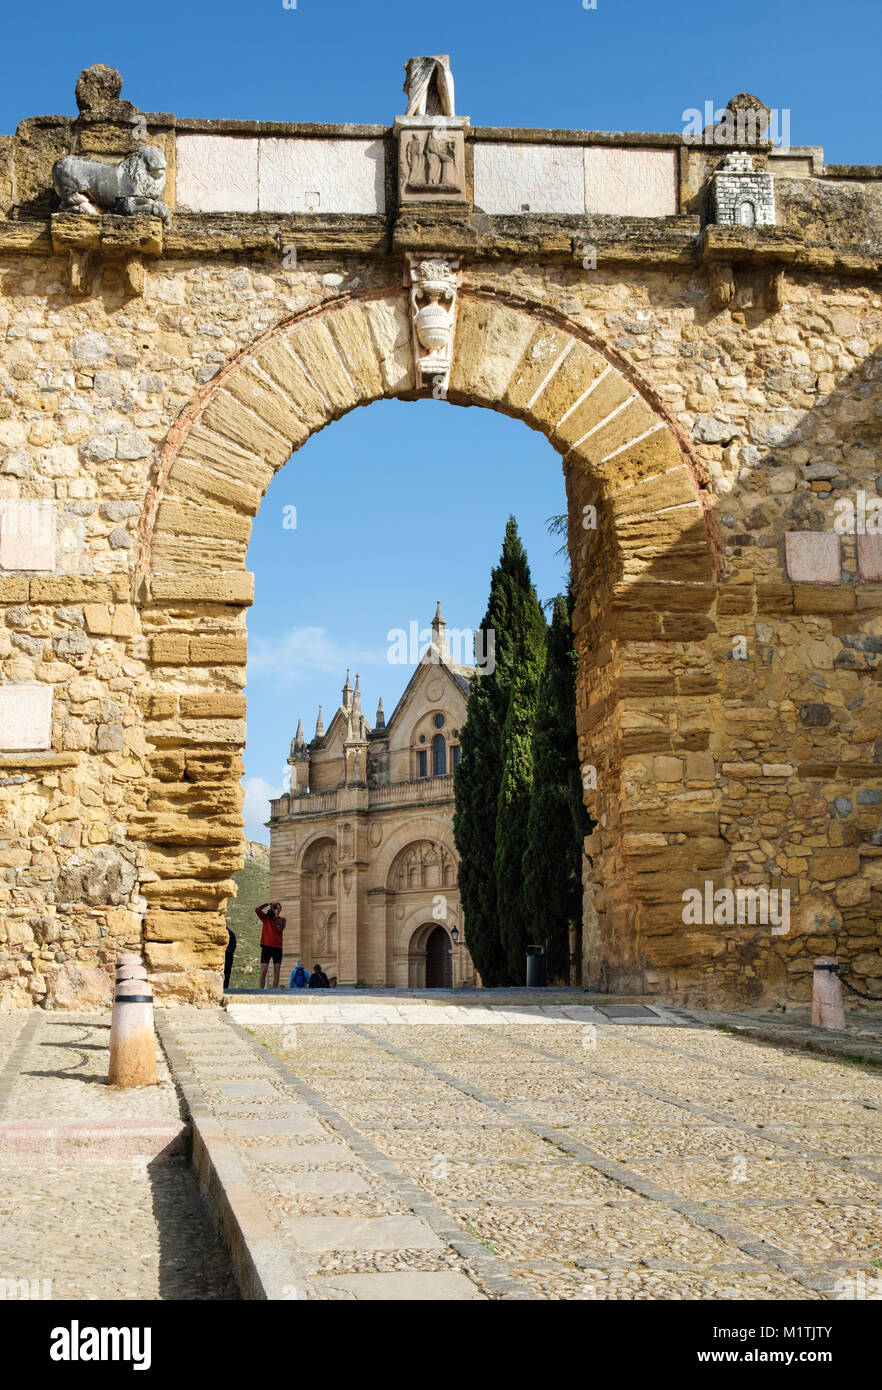 Passage de géants (Arco de los Gigantes] à la Collégiale Royale de Santa María la Mayor (Colegiata de Santa Maria la Mayor), Antequera, Espagne Banque D'Images